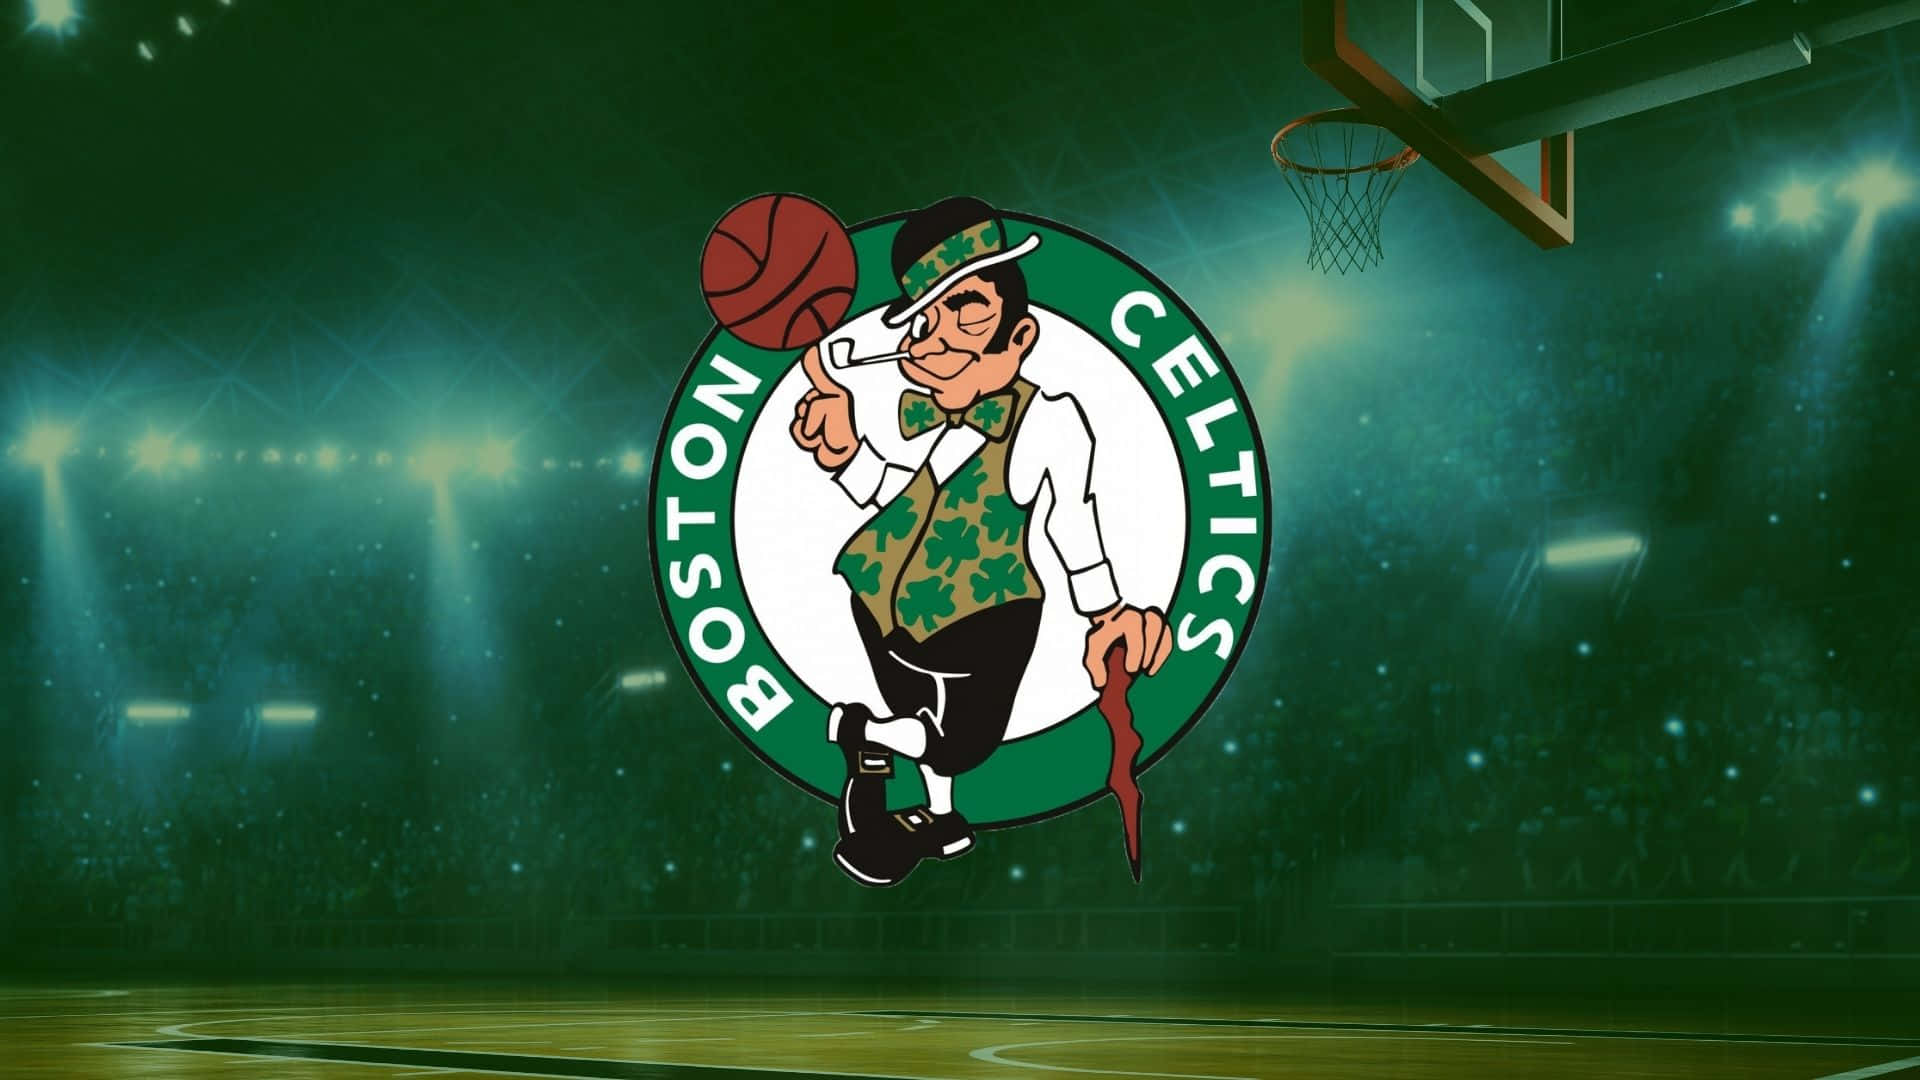 Firaframgång Med Boston Celtics! Wallpaper